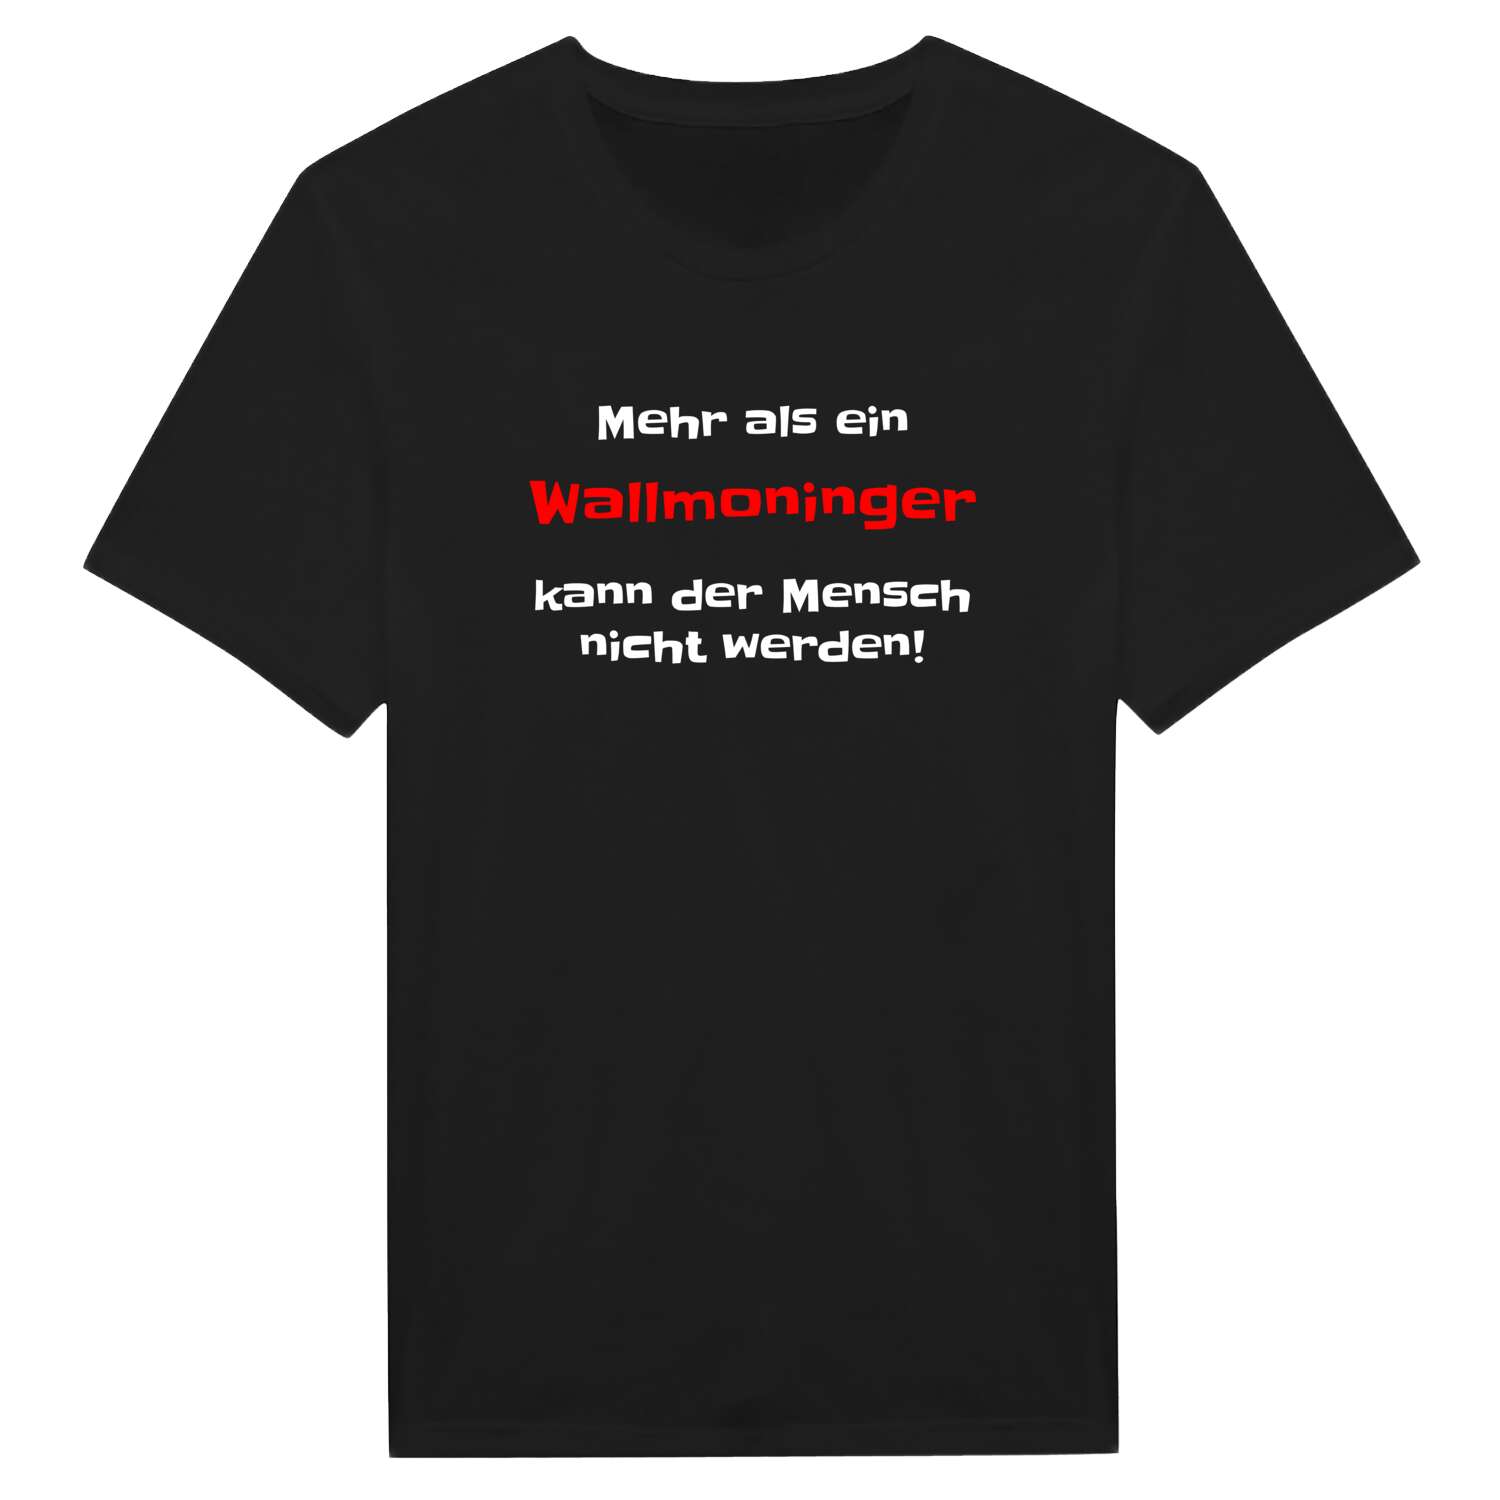 Wallmoning T-Shirt »Mehr als ein«